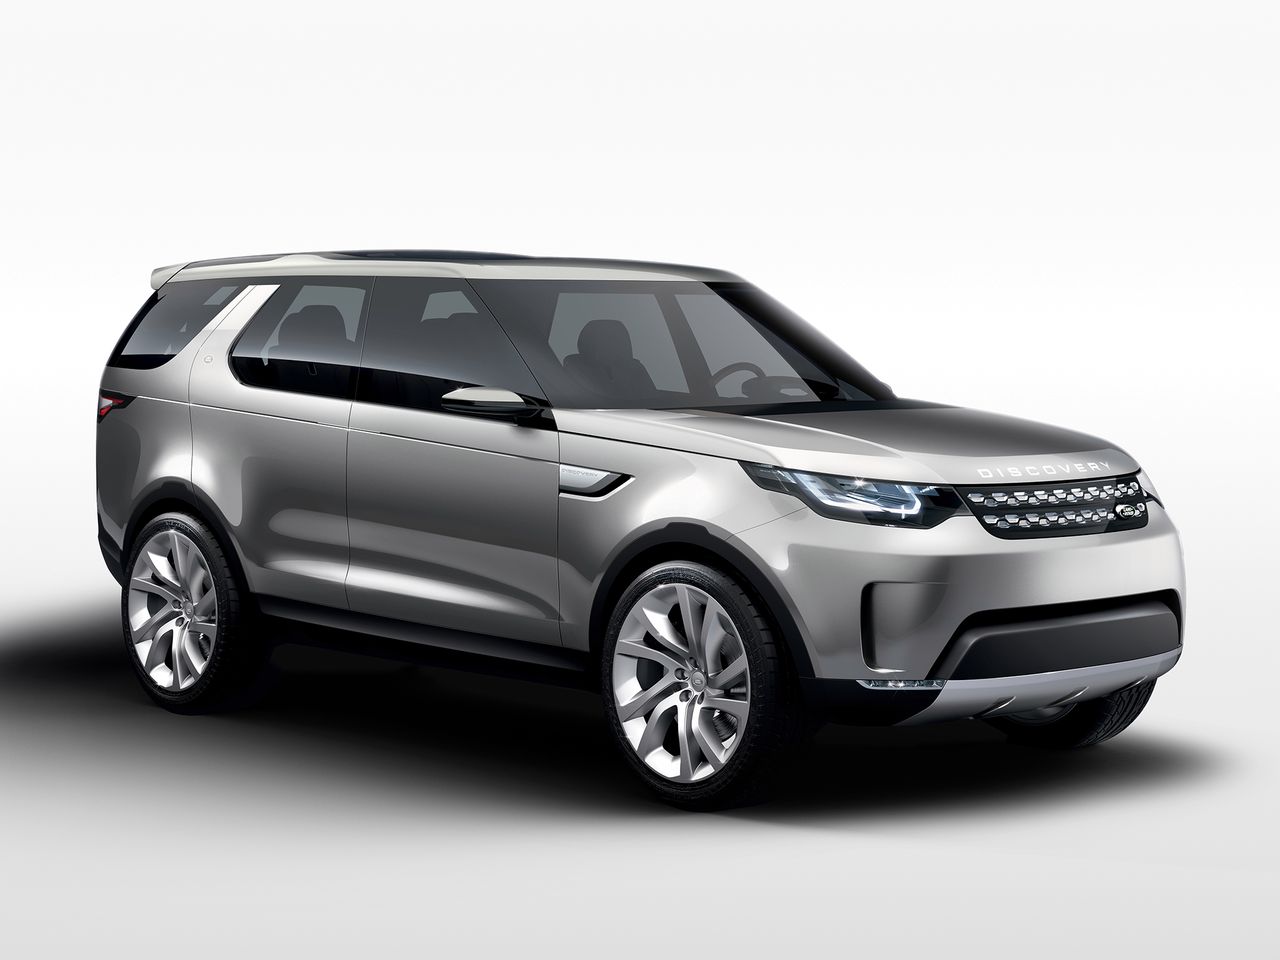 Land Rover Discovery Vision Concept - czy tak będzie wyglądało Discovery?